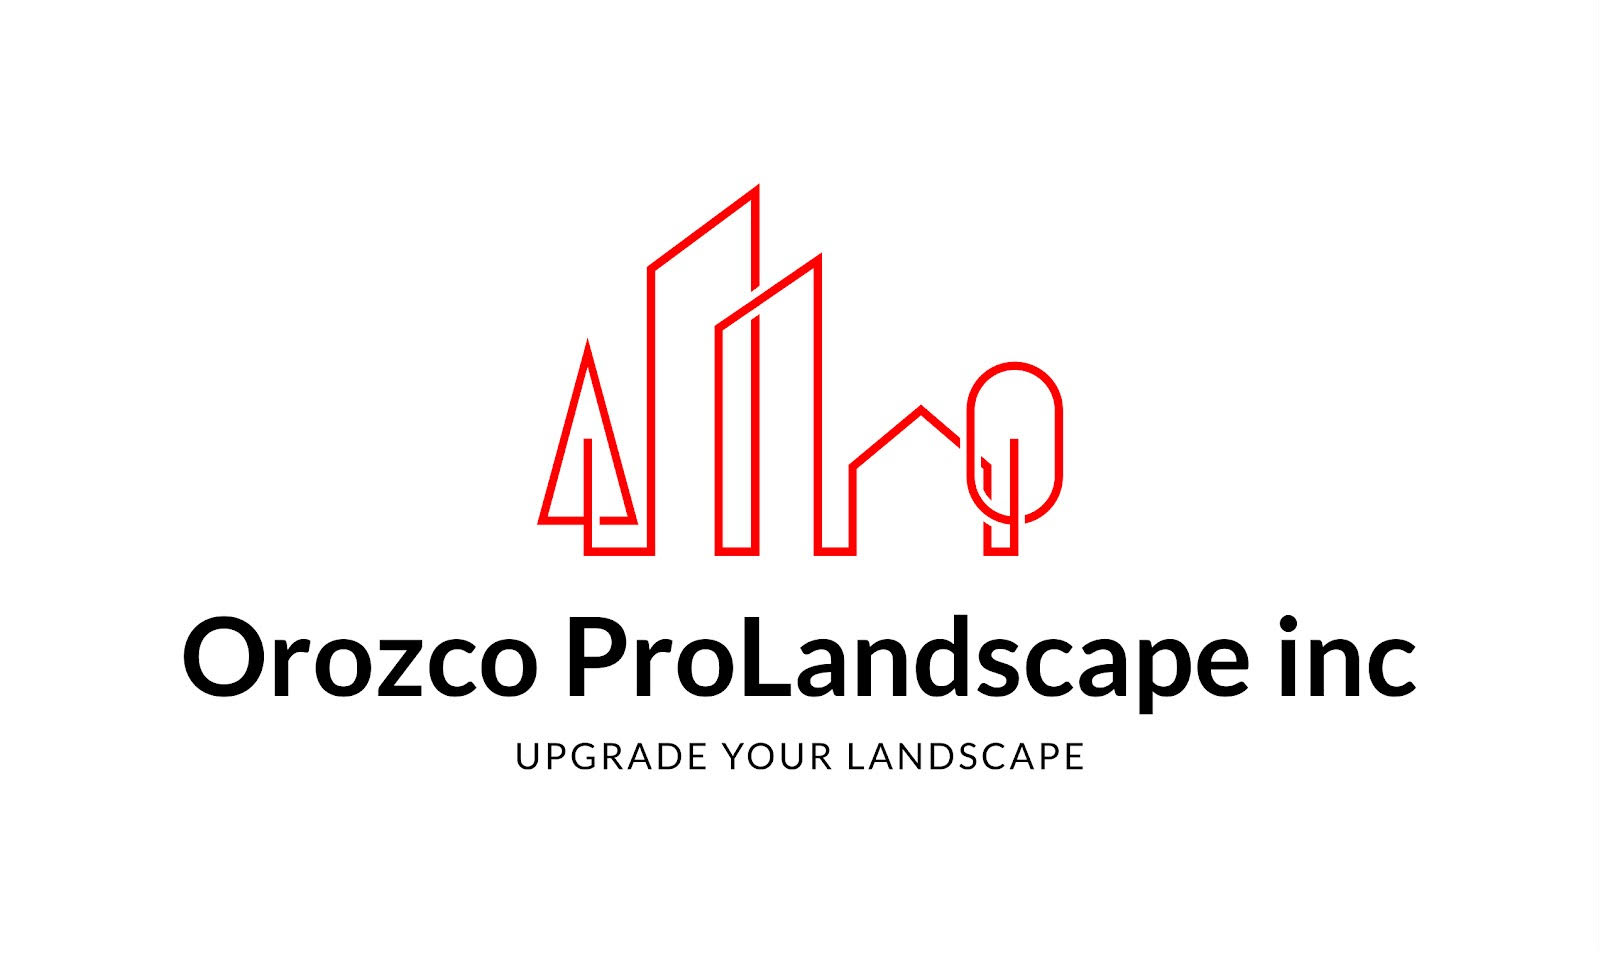 OROZCO PROLANDSCAPE INC Logo